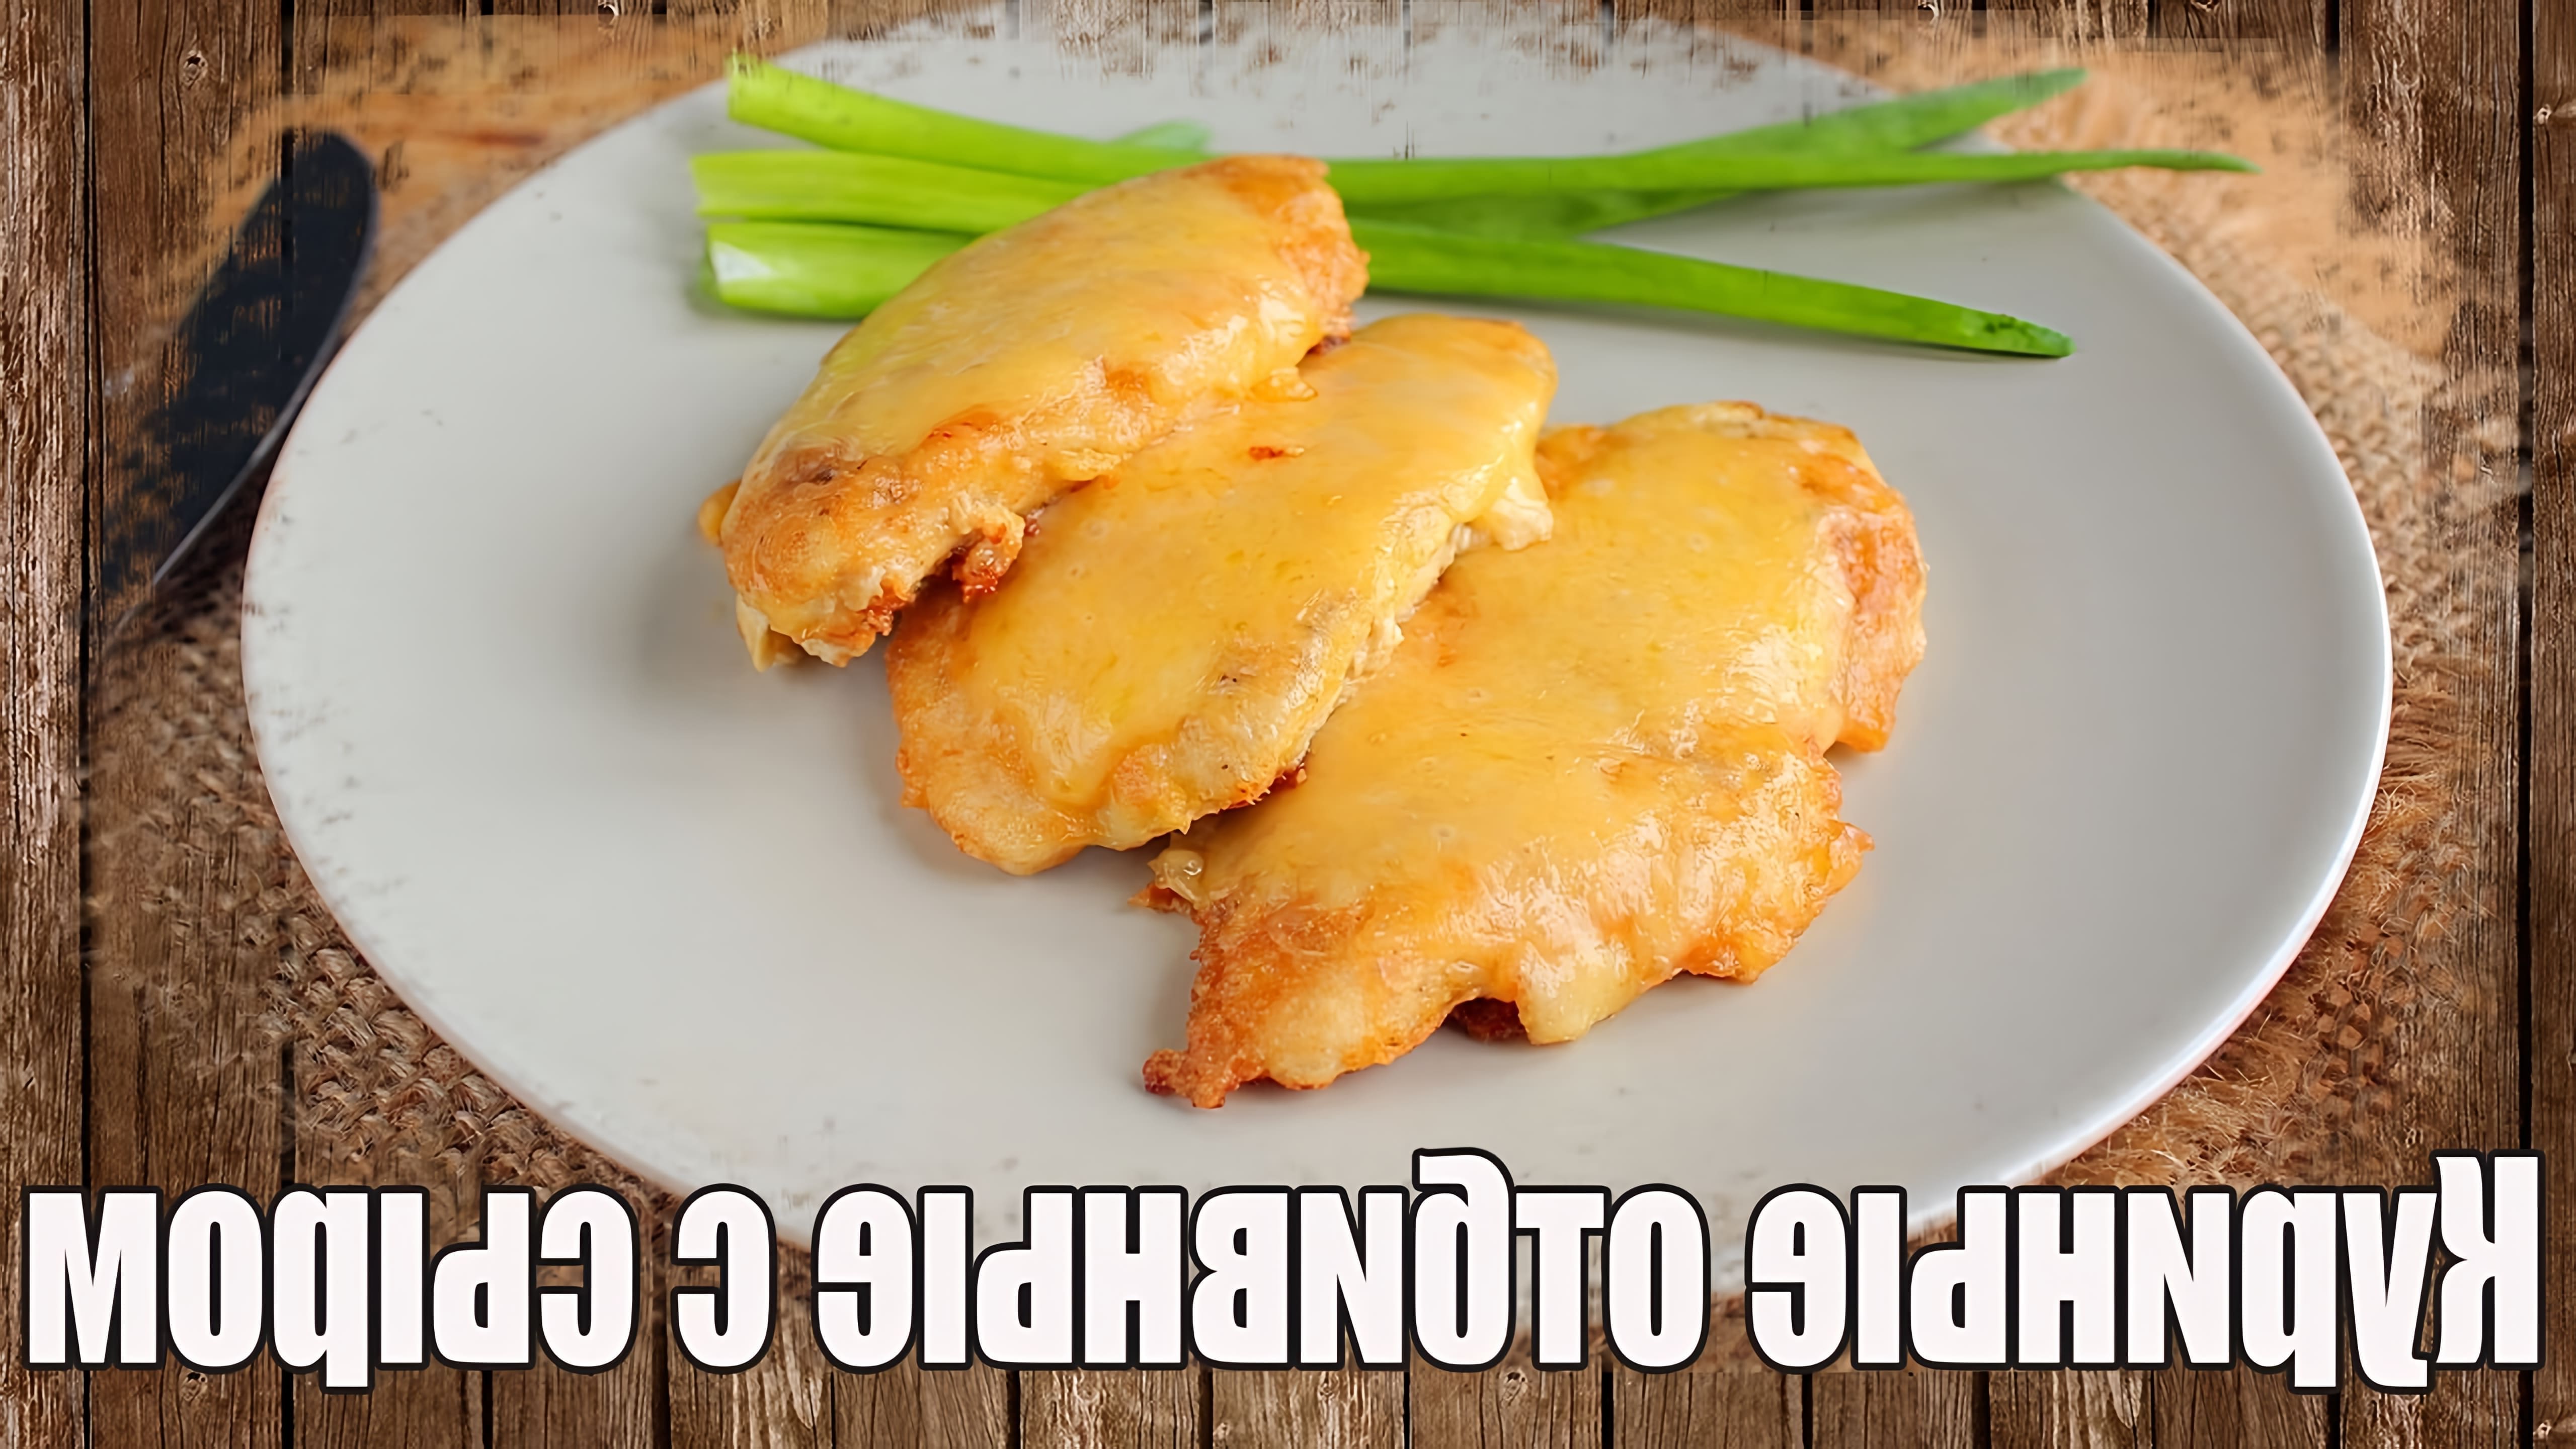 В этом видео демонстрируется рецепт приготовления куриных отбивных с сыром